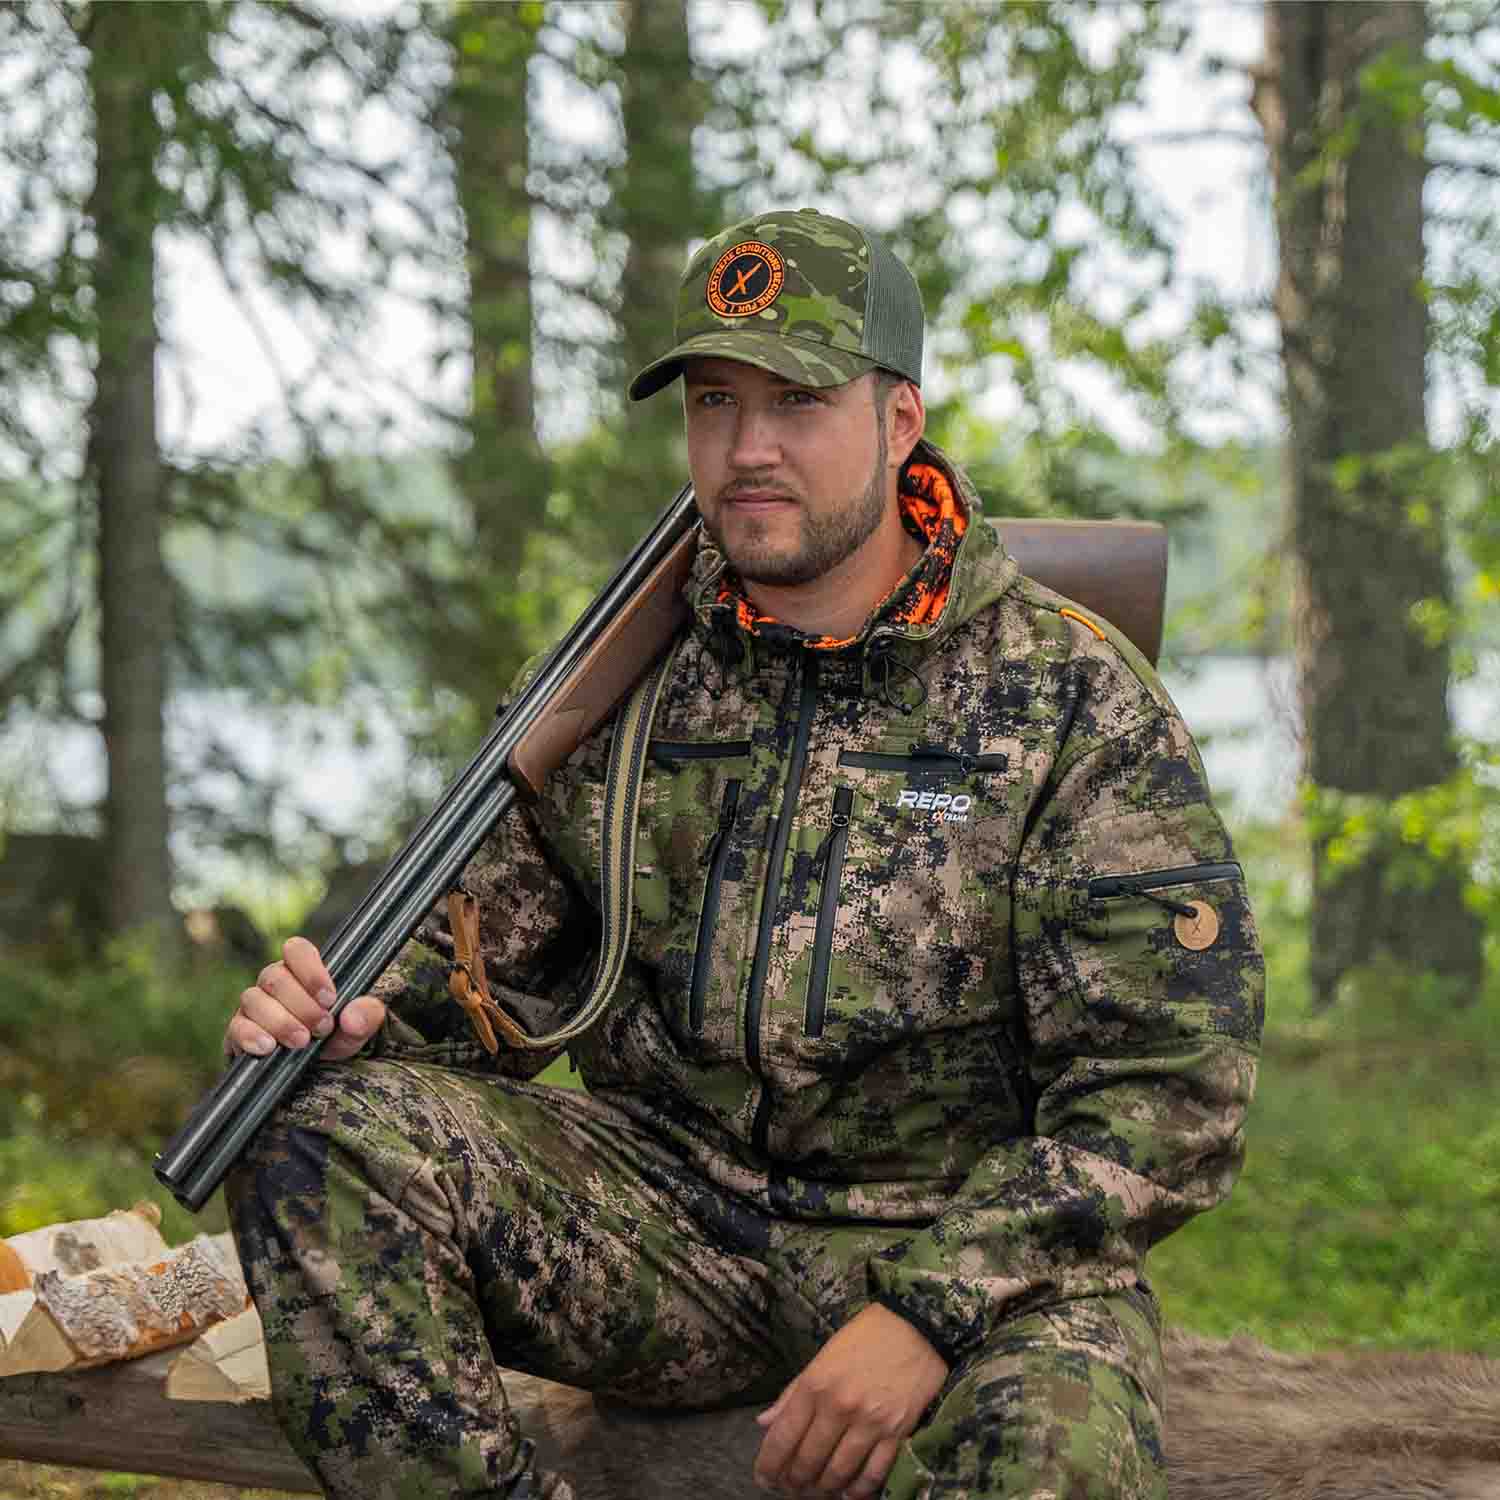 Karelia metsästyspuku ja Repo verkkolippalakki metsästäjän päällä